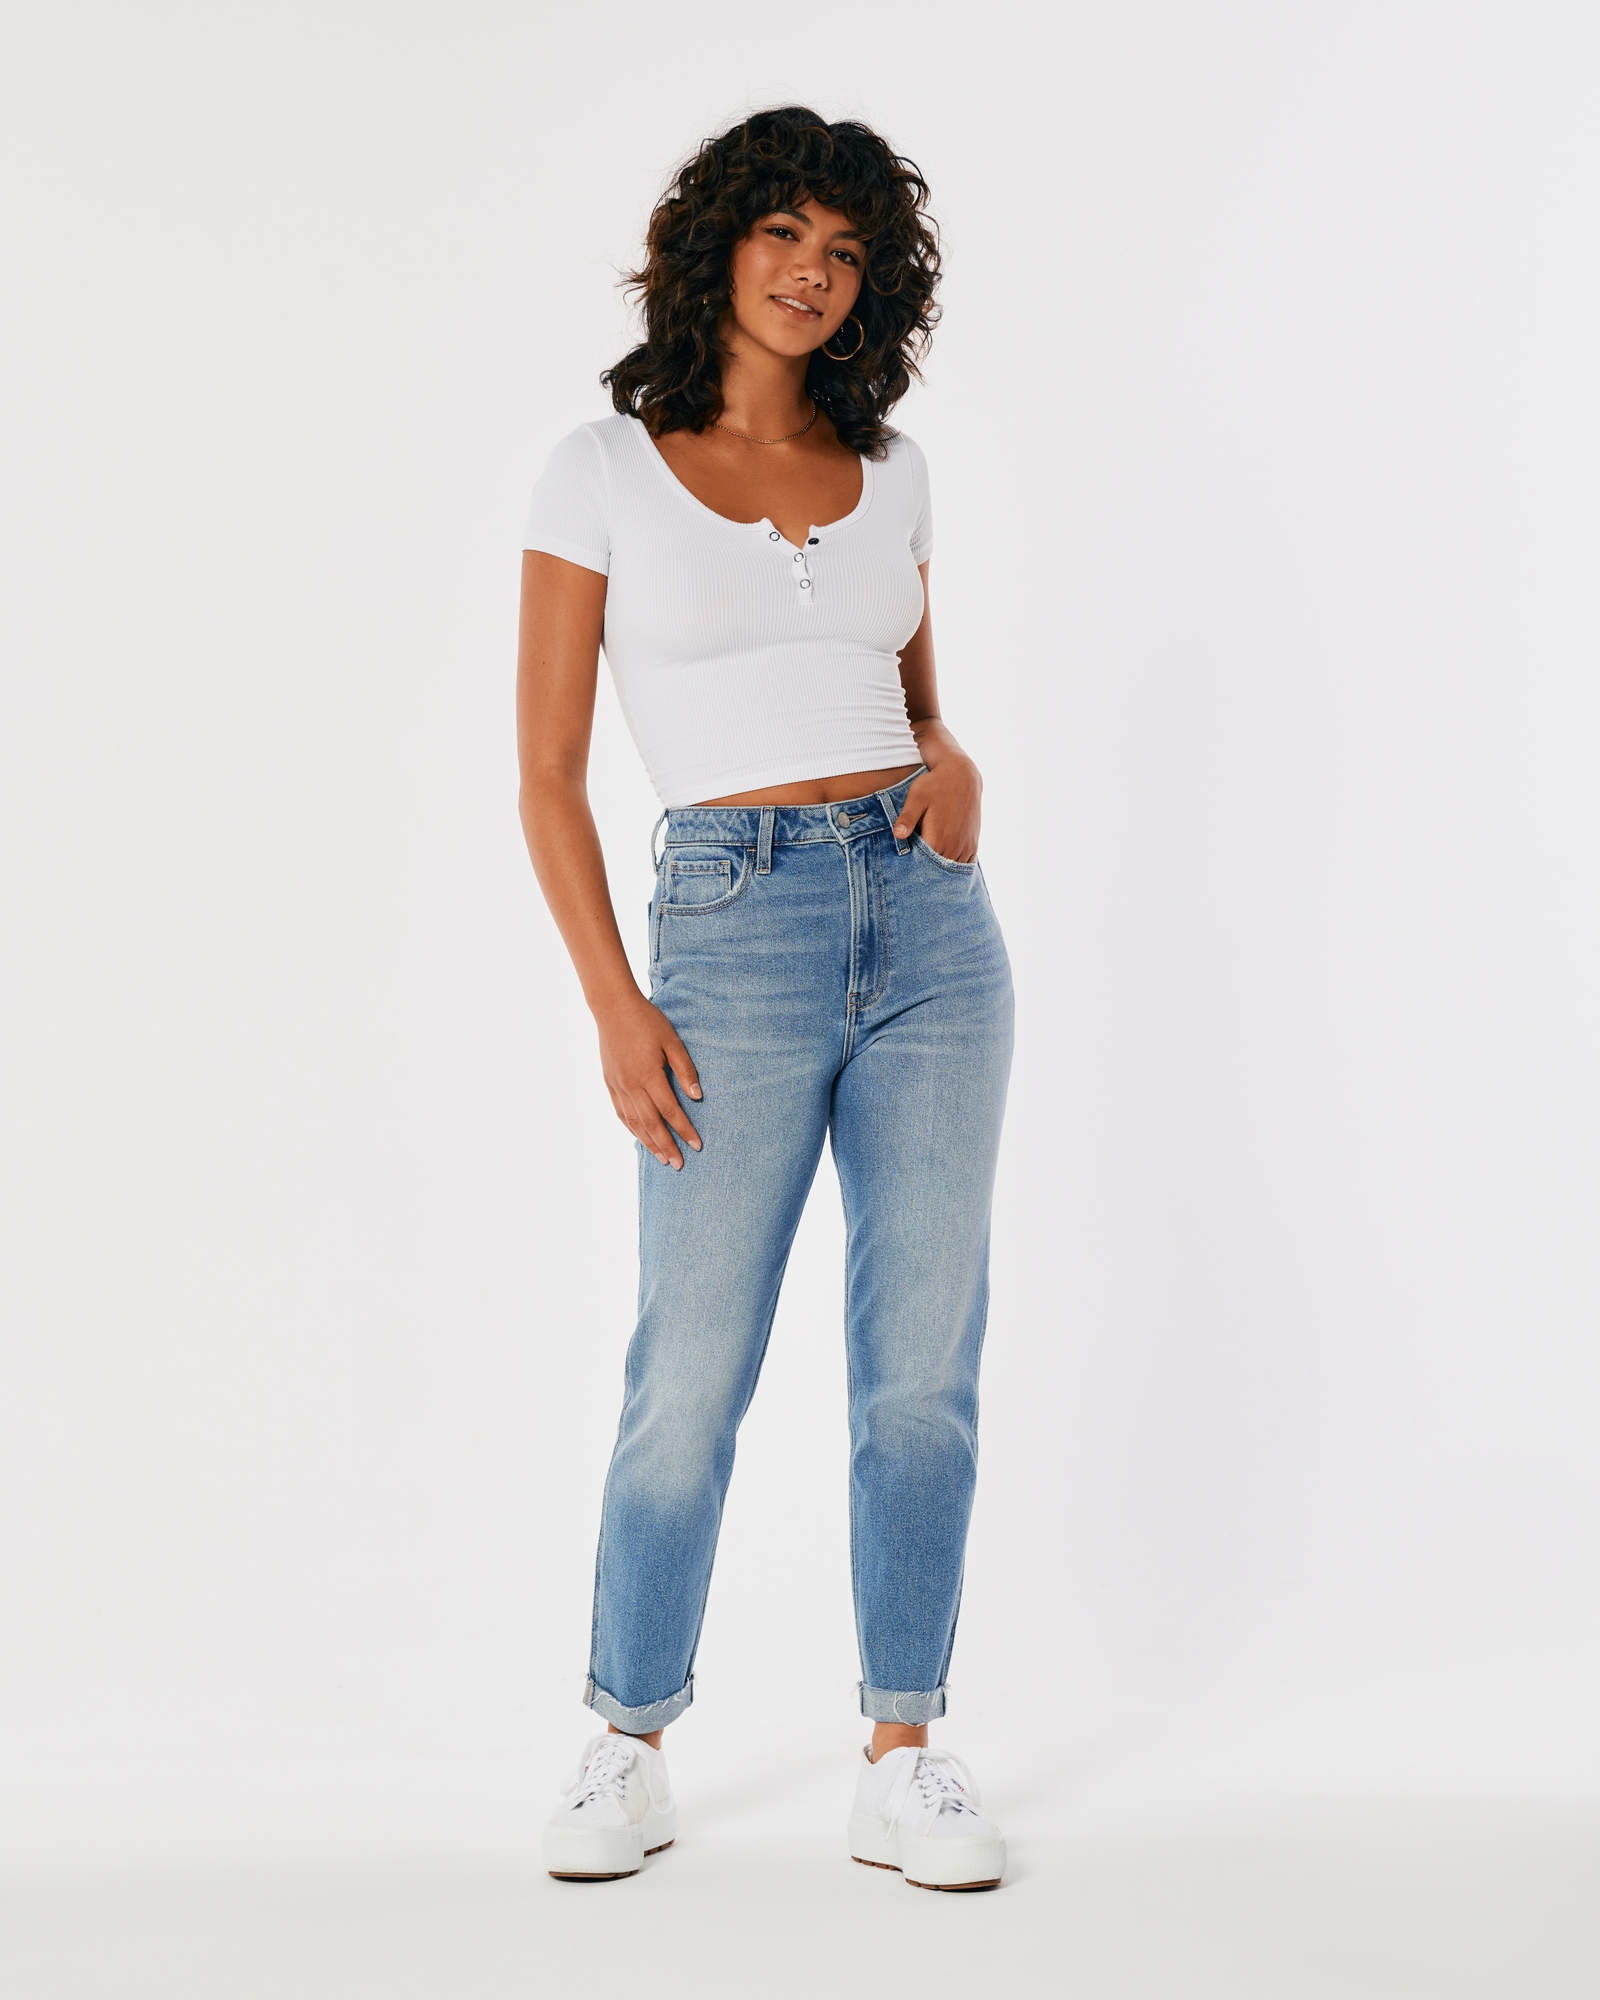 High Rise & High Waist Jeans for Women